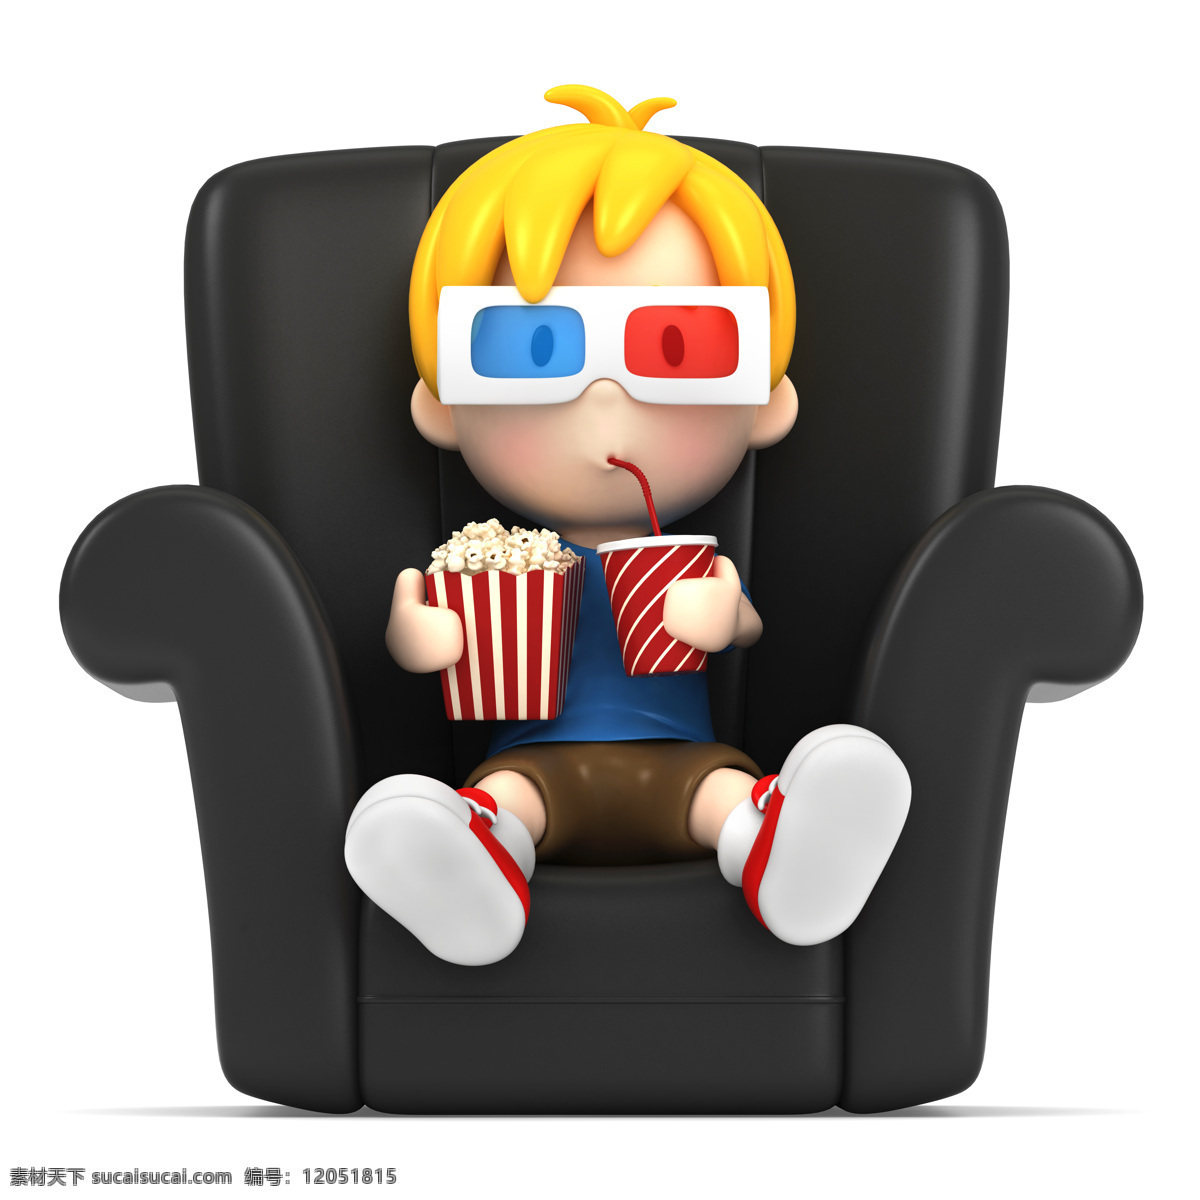 看电影 3d 小孩 沙发 3d眼镜 爆米花 3d小人 3d人物 卡通儿童 卡通3d 其他人物 人物图片